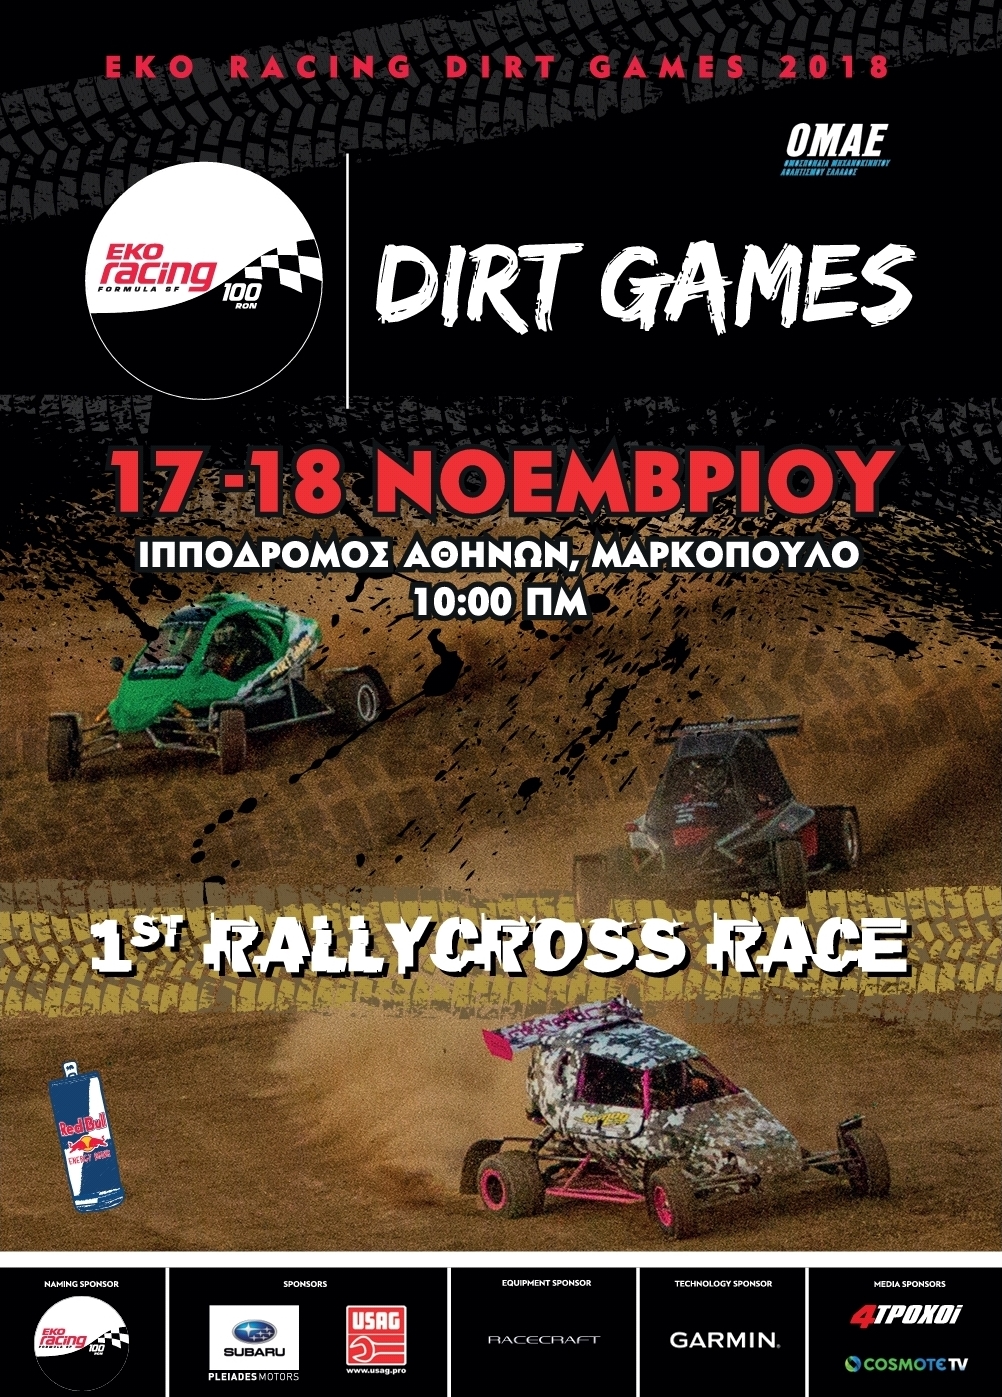 EKO Racing Dirt Games: Νέα πρόκληση! Ο 4ος γύρος του EKO Racing Dirt Games για το 2018 αποτελεί μια καινοτομία για τον ελληνικό μηχανοκίνητο αθλητισμό, αφού θα είναι ο πρώτος εγκεκριμένος αγώνας στη χώρα μας που θα πραγματοποιηθεί σύμφωνα με τους κανονισμούς Rallycross. To διήμερο 17-18 Νοεμβρίου οι συμμετέχοντες στο θεσμό, και συγκεκριμένα οι οδηγοί με τις χωμάτινες φόρμουλες, θα αναμετρηθούν «σώμα με σώμα» στη χωμάτινη διαδρομή του Ιπποδρόμου Αθηνών στο Μαρκόπουλο. Αντίθετα, οι οδηγοί με αγωνιστικά αυτοκίνητα θα διαγωνιστούν με τη γνωστή διαδικασία της ατομικής χρονομέτρησης, πραγματοποιώντας τέσσερα περάσματα από τη διαδρομή, με τα τρία καλύτερα να προσμετρούν στο τέλος. Ο τρόπος διεξαγωγής του αγώνα βασίζεται στους κανονισμούς του Παγκόσμιου Πρωταθλήματος RX, με έως έξι χωμάτινες φόρμουλες να βρίσκονται συγχρόνως στην πίστα. Η διαδικασία του αγώνα θα ξεκινήσει από το Σάββατο με τα τέσσερα πρώτα σκέλη των προκριματικών γύρων (Q), όπου οι οδηγοί θα αποκομίζουν βαθμούς από το καθένα Q ξεχωριστά (15-10-8-6-5-4). Στο Q1, η σχάρα της εκκίνησης θα καθοριστεί σύμφωνα με τη βαθμολογία των οδηγών στην κάθε κατηγορία ξεχωριστά, ενώ στα τρία επόμενα ανάλογα με τους βαθμούς που θα έχουν αποκομίσει στο αμέσως προηγούμενο. Με την ολοκλήρωση των «Q», οι δώδεκα πρώτοι στην κατάταξη, όπως αυτή θα έχει διαμορφωθεί, προκρίνονται στην επόμενη φάση, των ημιτελικών. Στον μεγάλο τελικό, με διαδικασία knock out, θα προκριθούν οι τρεις πρώτοι κάθε ημιτελικού, και ένας από αυτούς θα αναδειχθεί ο νικητής του αγώνα. Αξίζει να σημειώσουμε ότι η διάρκεια των προκριματικών θα είναι τέσσερις γύροι, ενώ αυτή των ημιτελικών και του τελικού έξι! Στη σελίδα του EKO Racing Dirt Games, και συγκεκριμένα στο σύνδεσμο http://www.dirtgames.gr/races, μπορείτε να βρείτε το συμπληρωματικό κανονισμό του αγώνα, με όλες τις λεπτομέρειες για αγωνιζόμενους αλλά και θεατές. Τέλος, δεν πρέπει να ξεχνάμε πως ο θεσμός για το 2018... τρέχει με την premium βενζίνη EKO Racing 100 και με τα φτερά του Red Bull, ενώ τον υποστηρίζουν η Subaru Πλειάδες Motors και η USAG. Χορηγός τεχνολογίας είναι η Garmin Greece, η Racecraft είναι χορηγός εξοπλισμού, με την COSMOTE TV και το περιοδικό 4TΡΟΧΟΙ να έχουν αναλάβει το ρόλο των χορηγών επικοινωνίας, ενώ το συνδρομητικό κανάλι καλύπτει το θεσμό τηλεοπτικά!